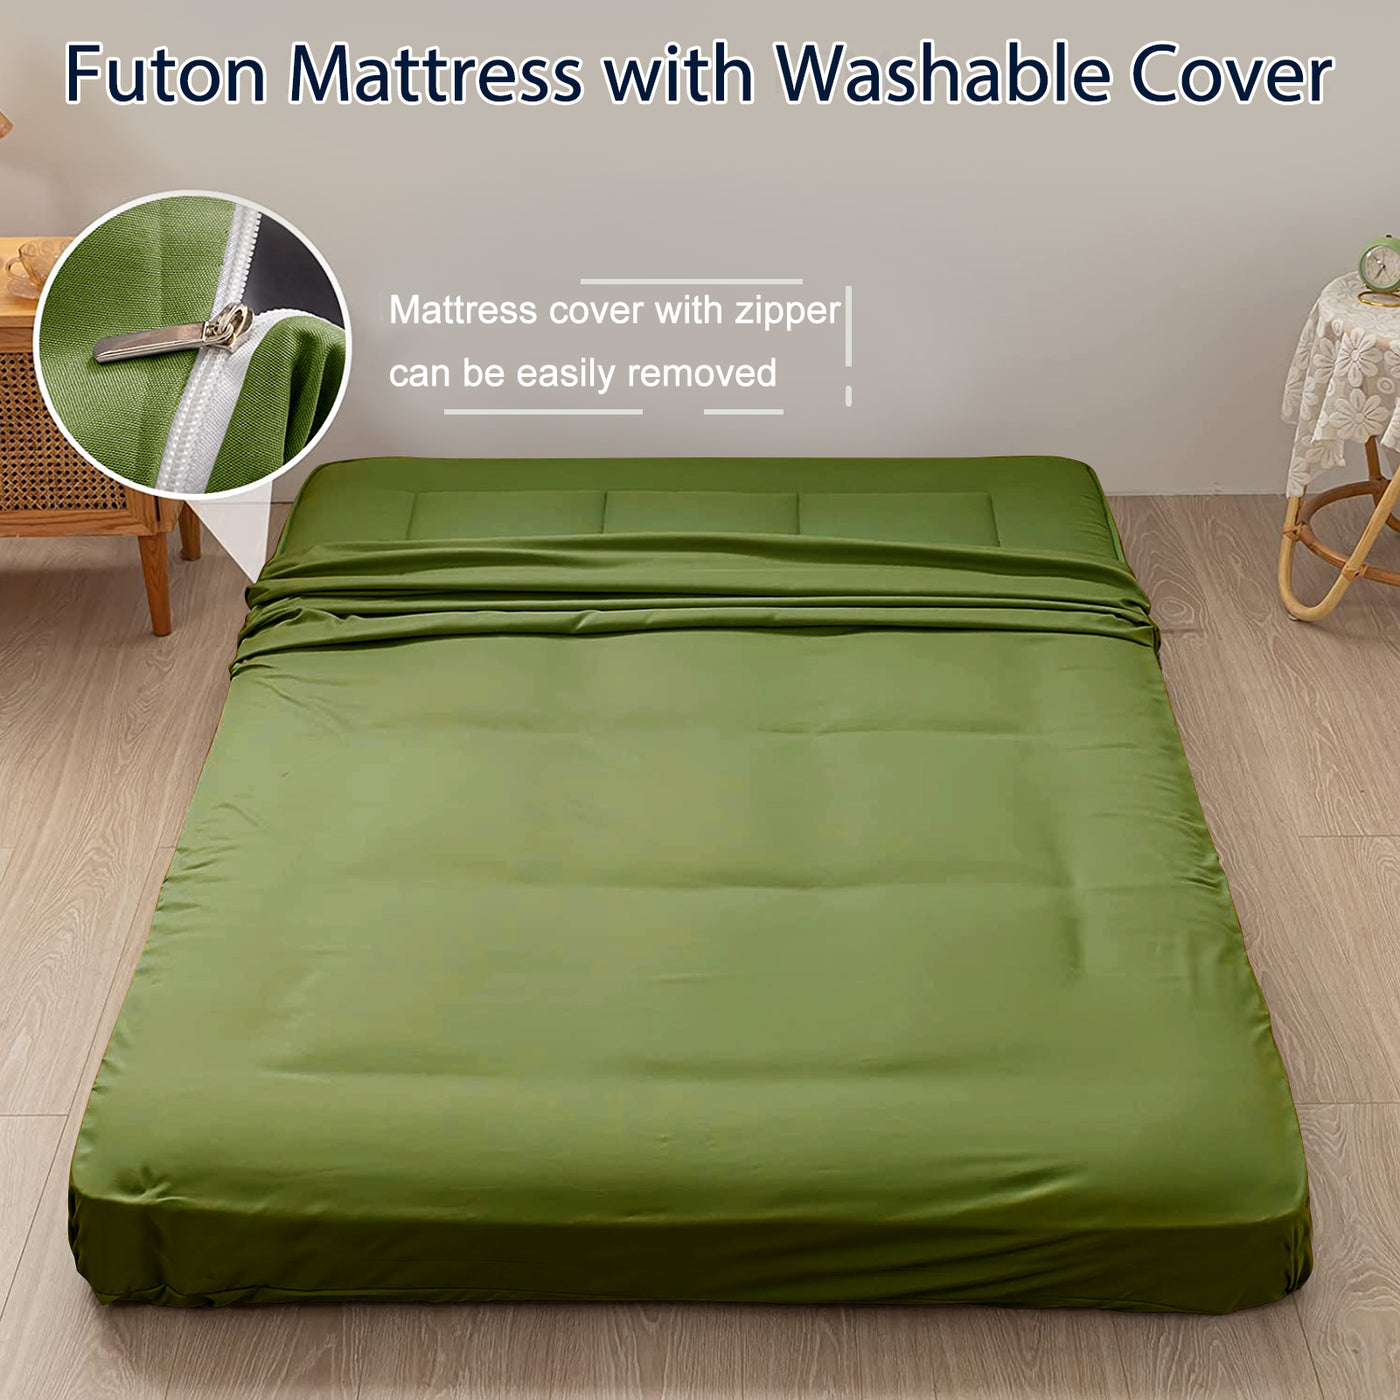 futon mattress#thickness_6"